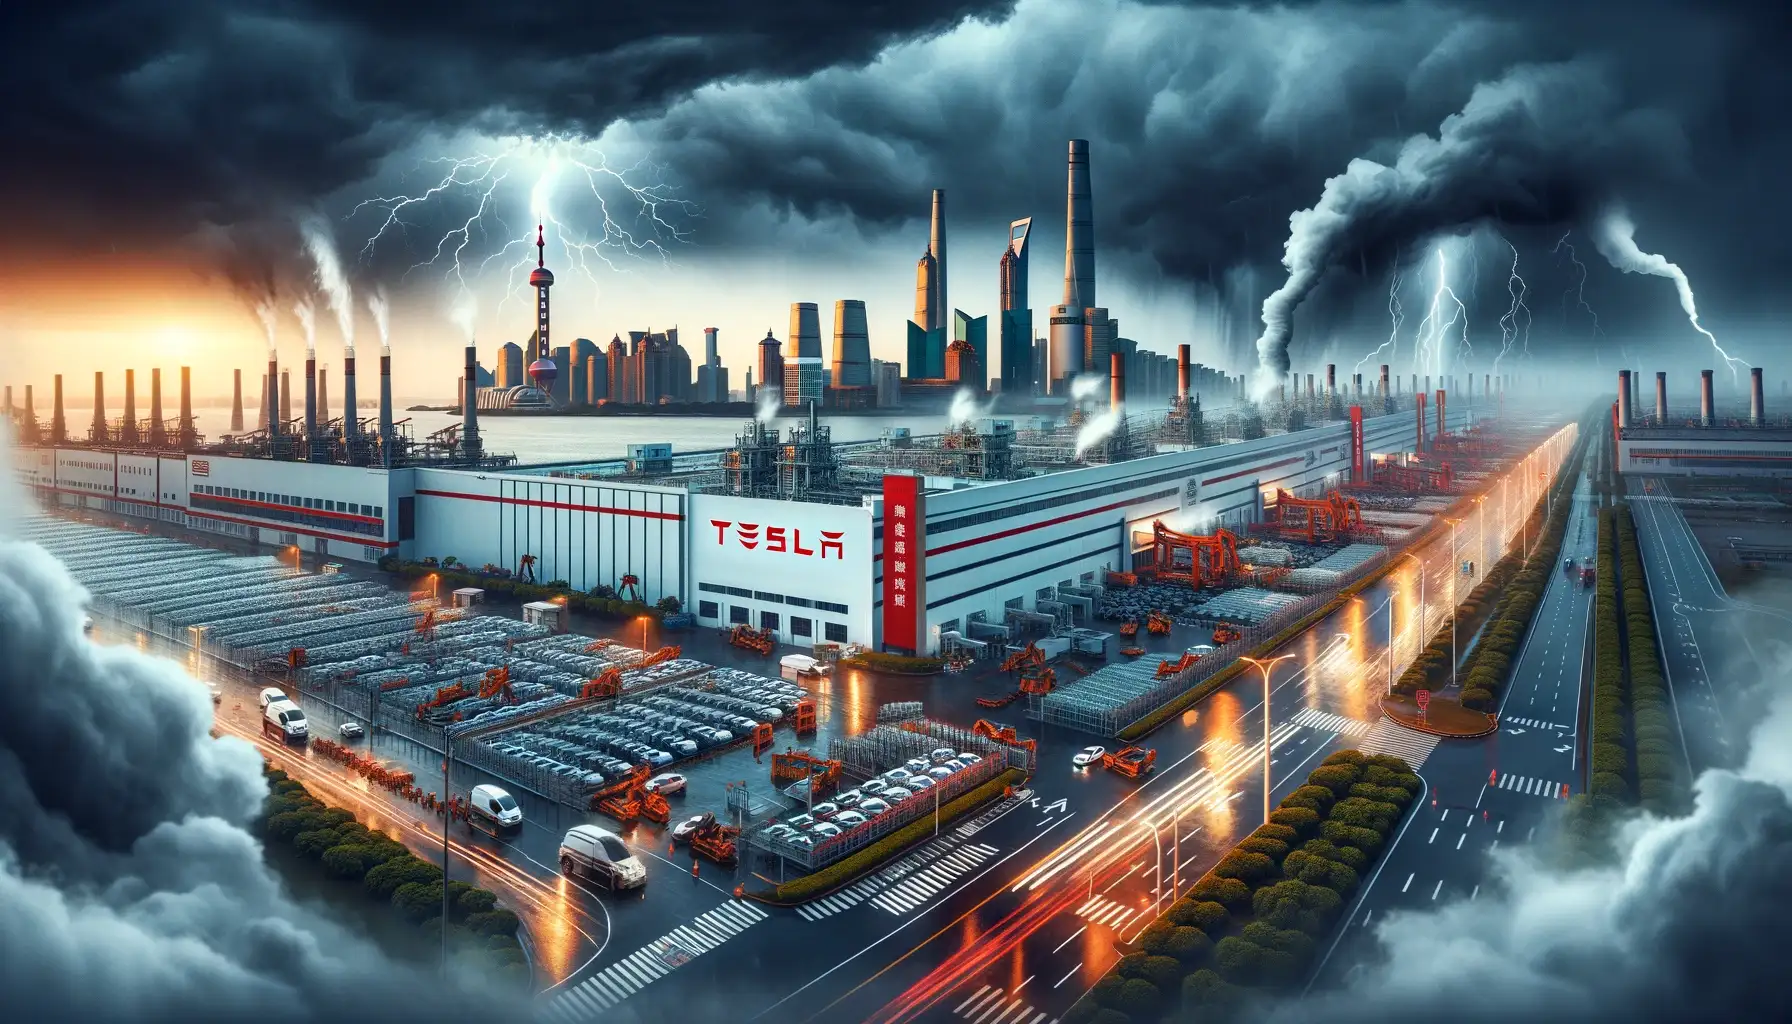 Tesla'nın Çin'deki Zorlu Mücadelesi: Üretimde Kesinti ve Artan Rekabet